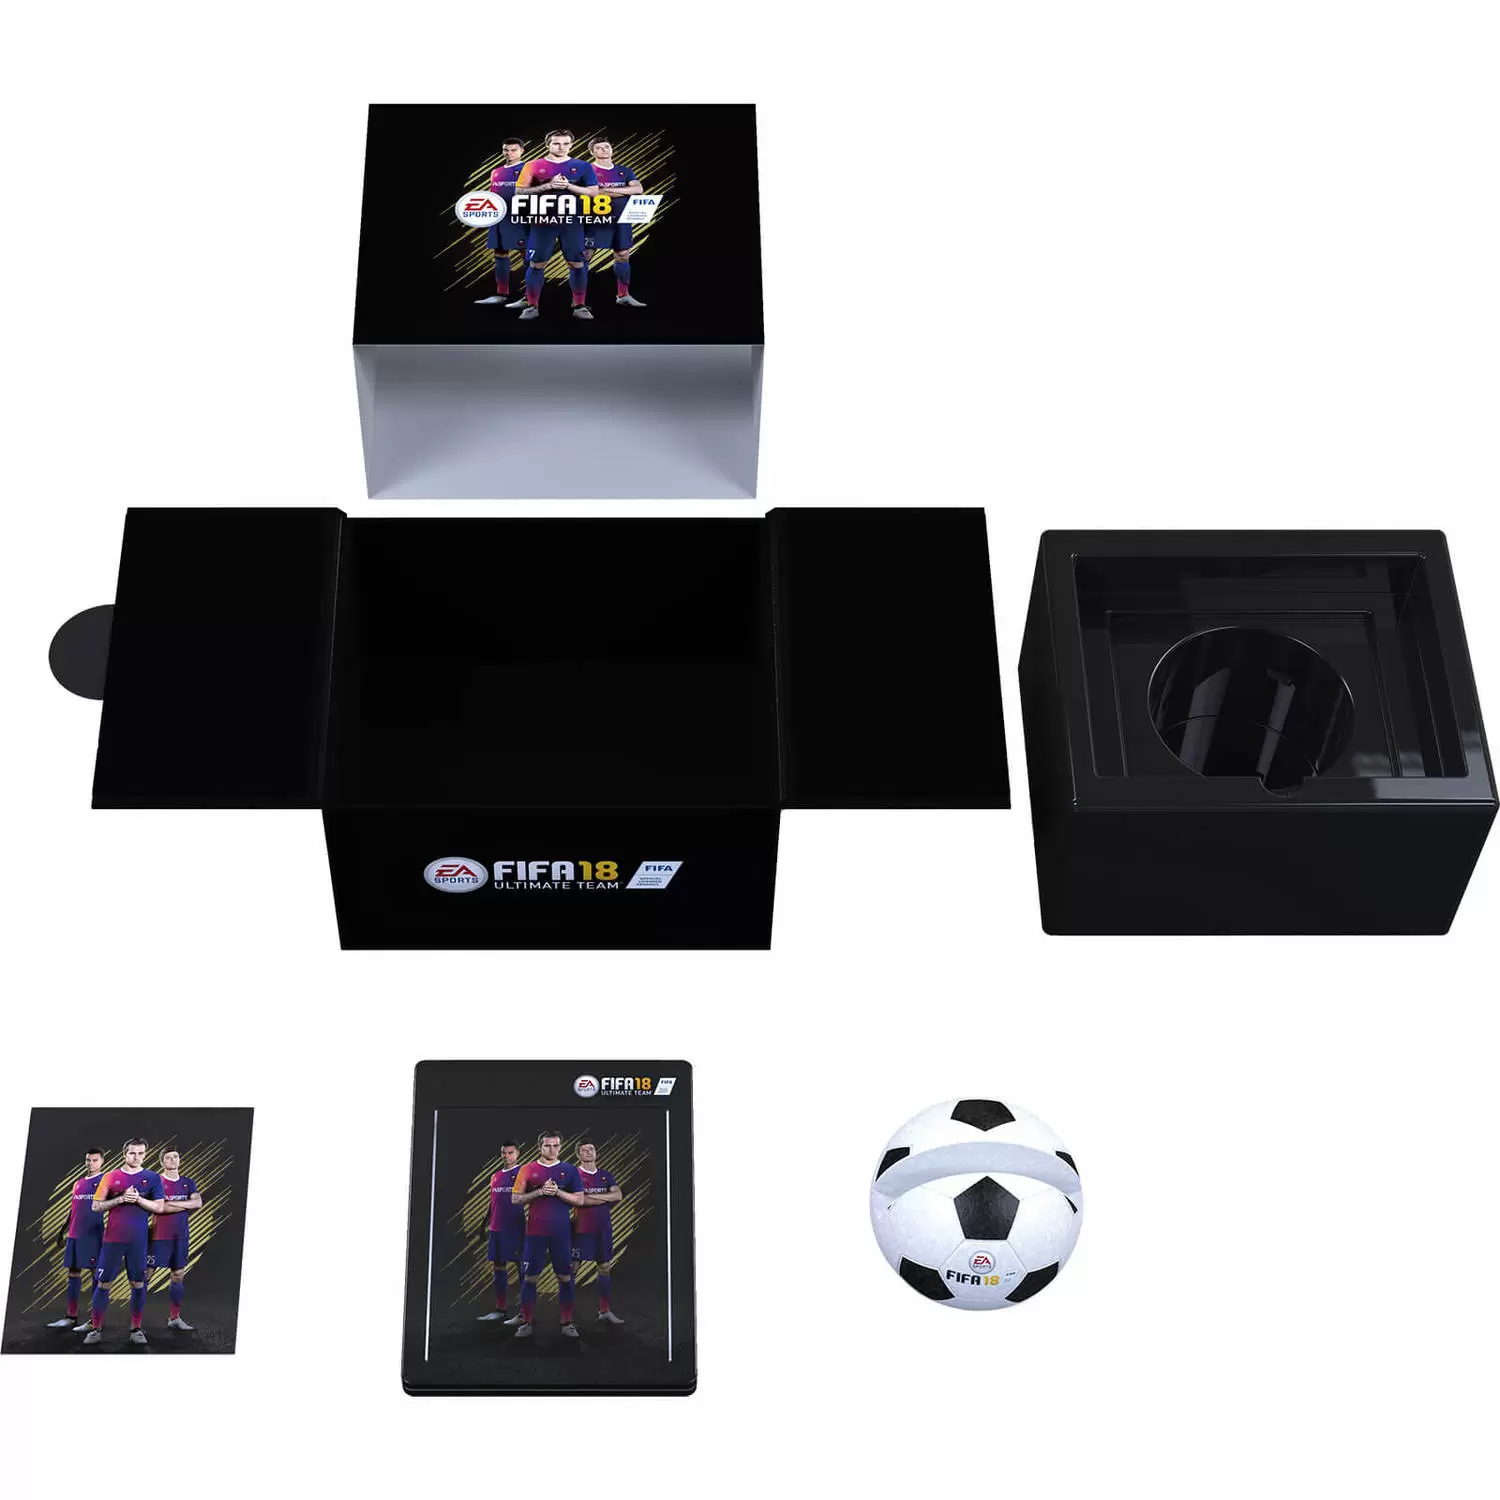 XBOX One Games - FIFA 18 - Édition Ronaldo Collector